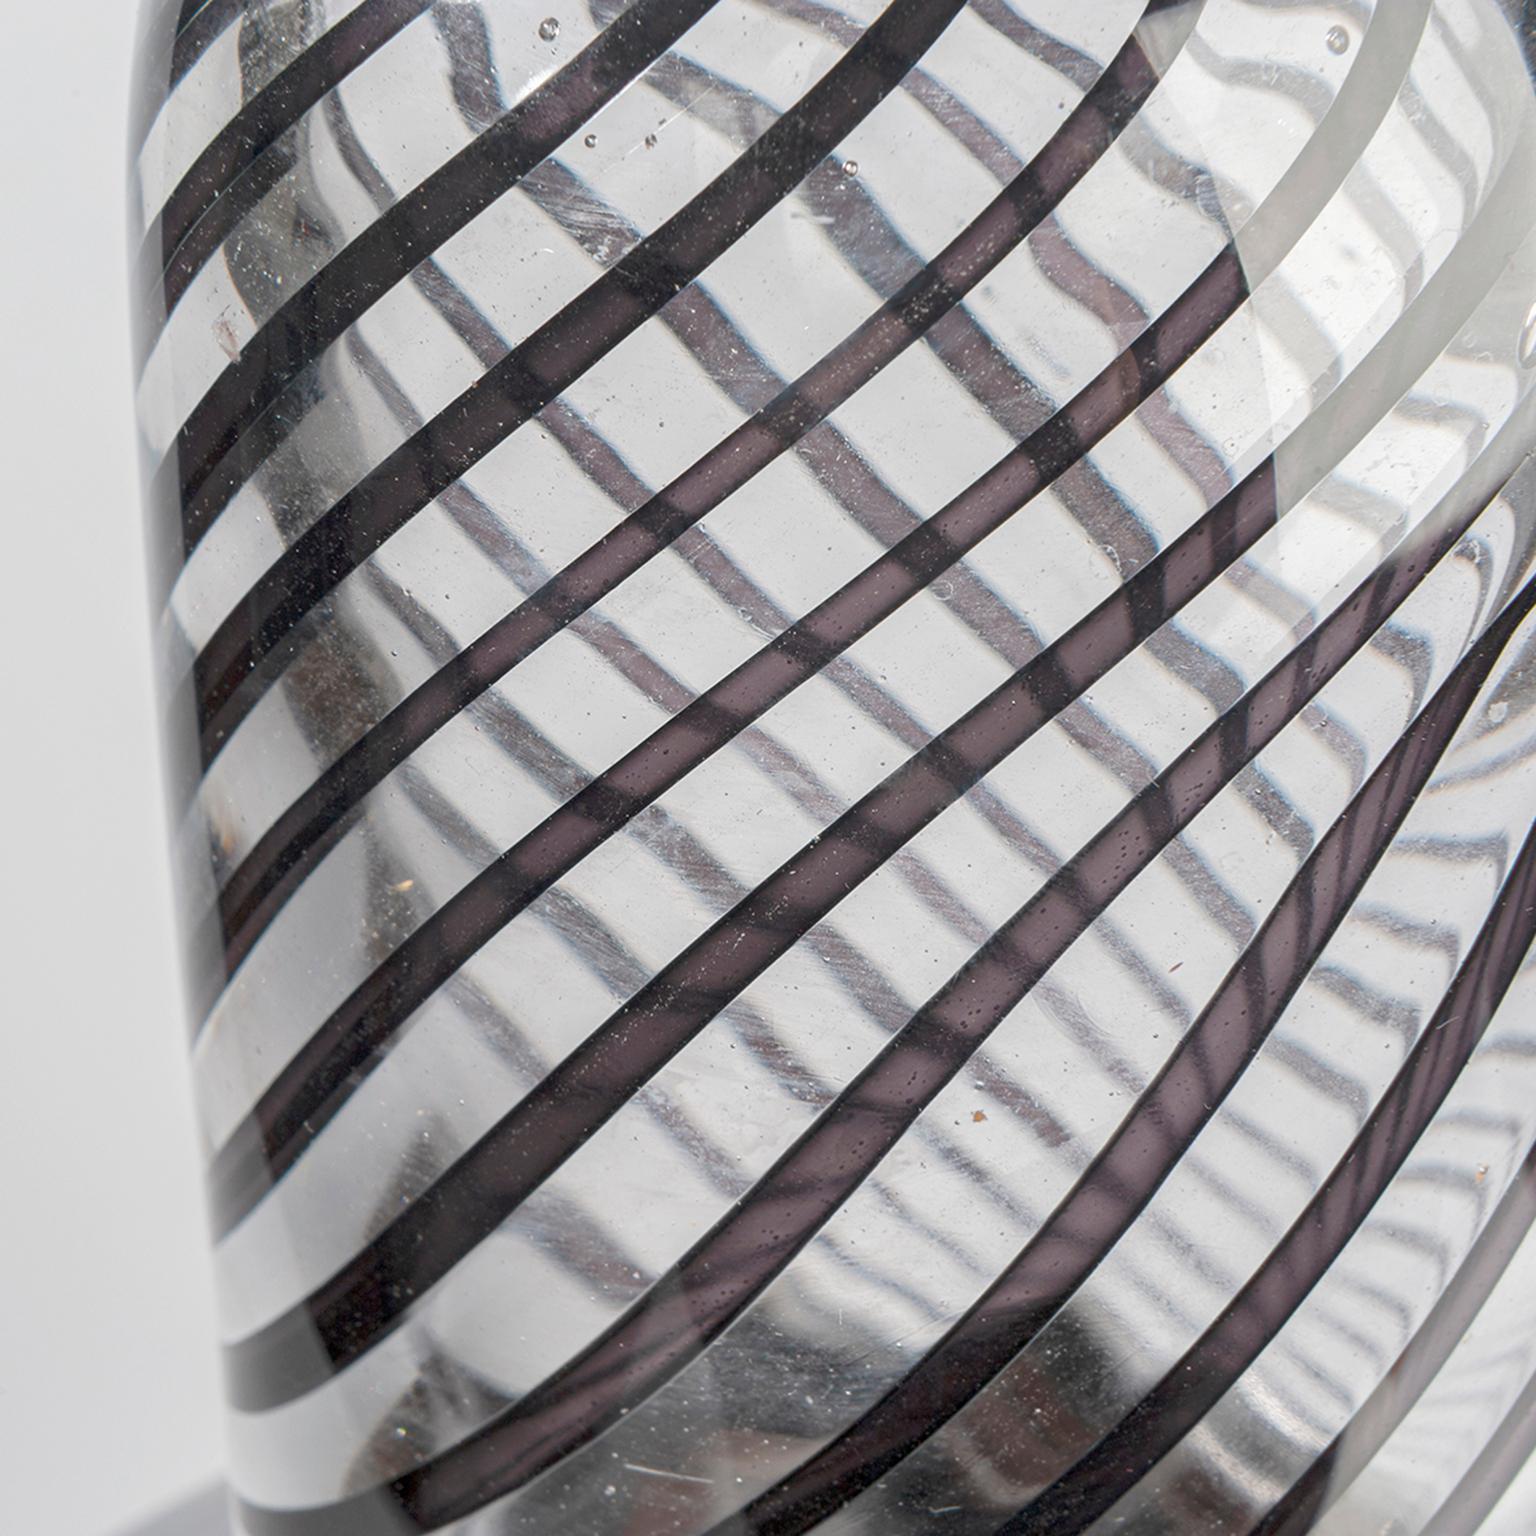 Kupferglas: poliert und sandgestrahlt. Transparent und mit schwarzen Streifen versehen. Handgeblasen in Leerdam, Niederlande.